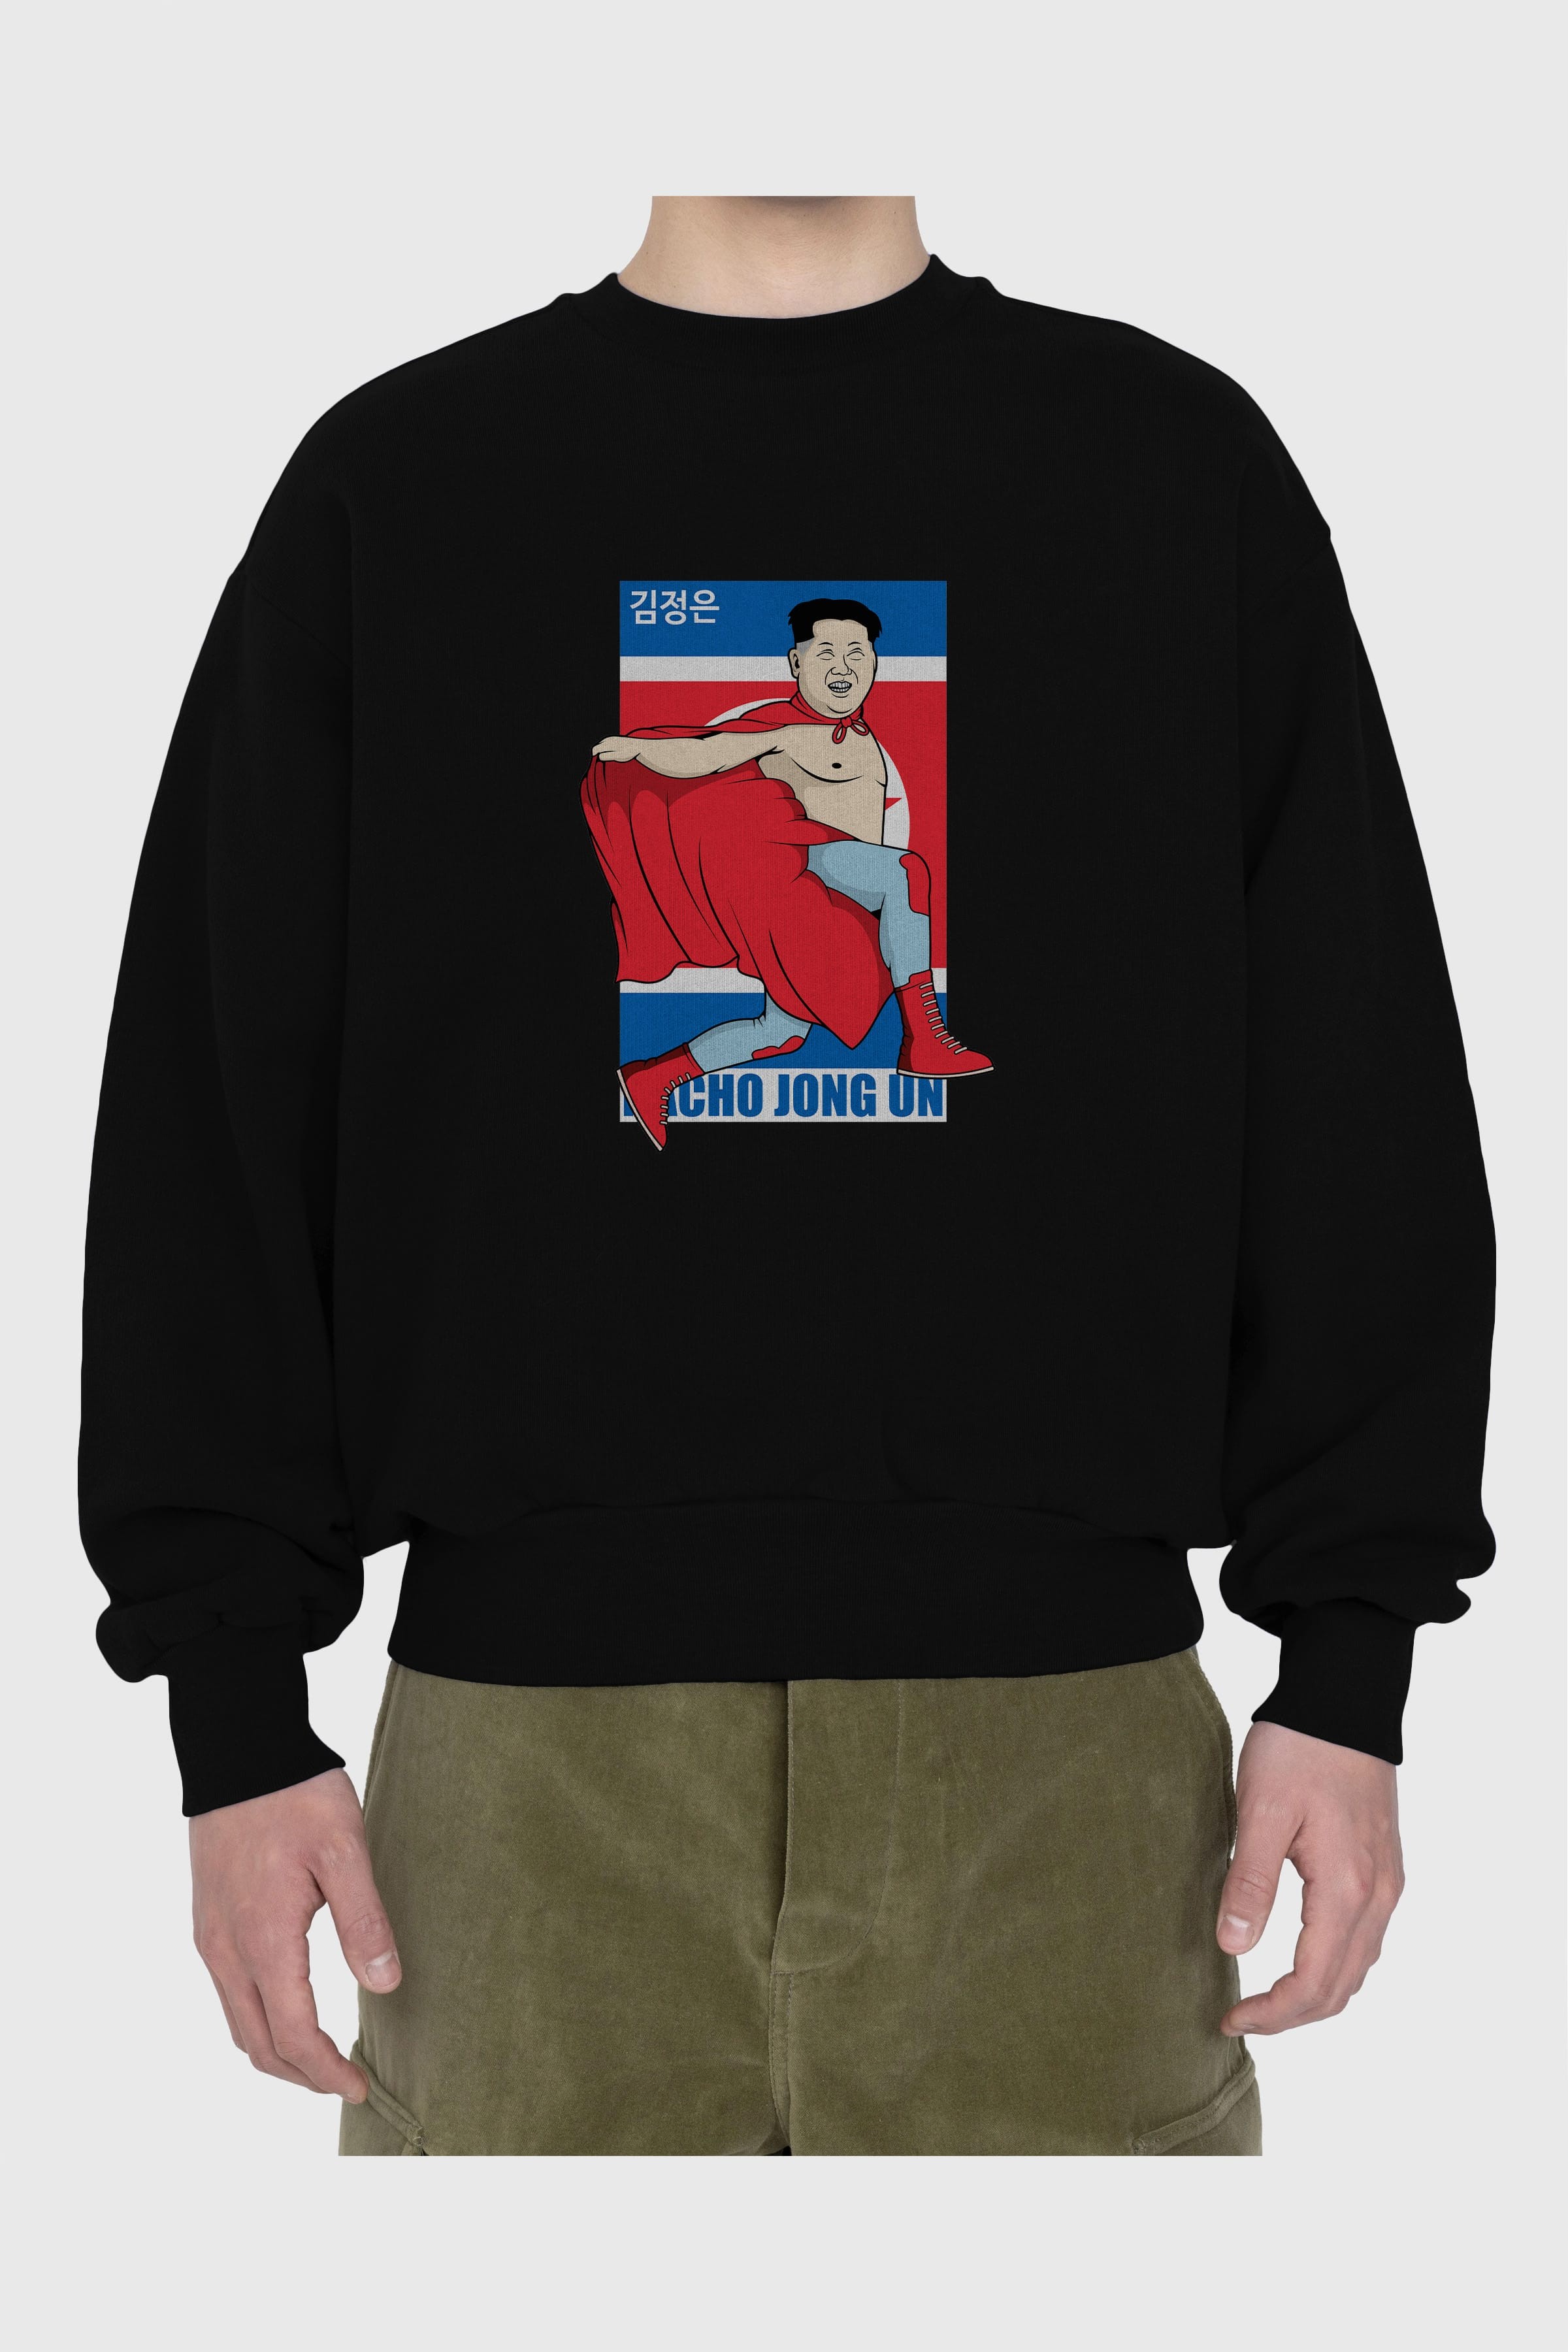 Nacho Libre Jong Un Ön Baskılı Oversize Sweatshirt Erkek Kadın Unisex